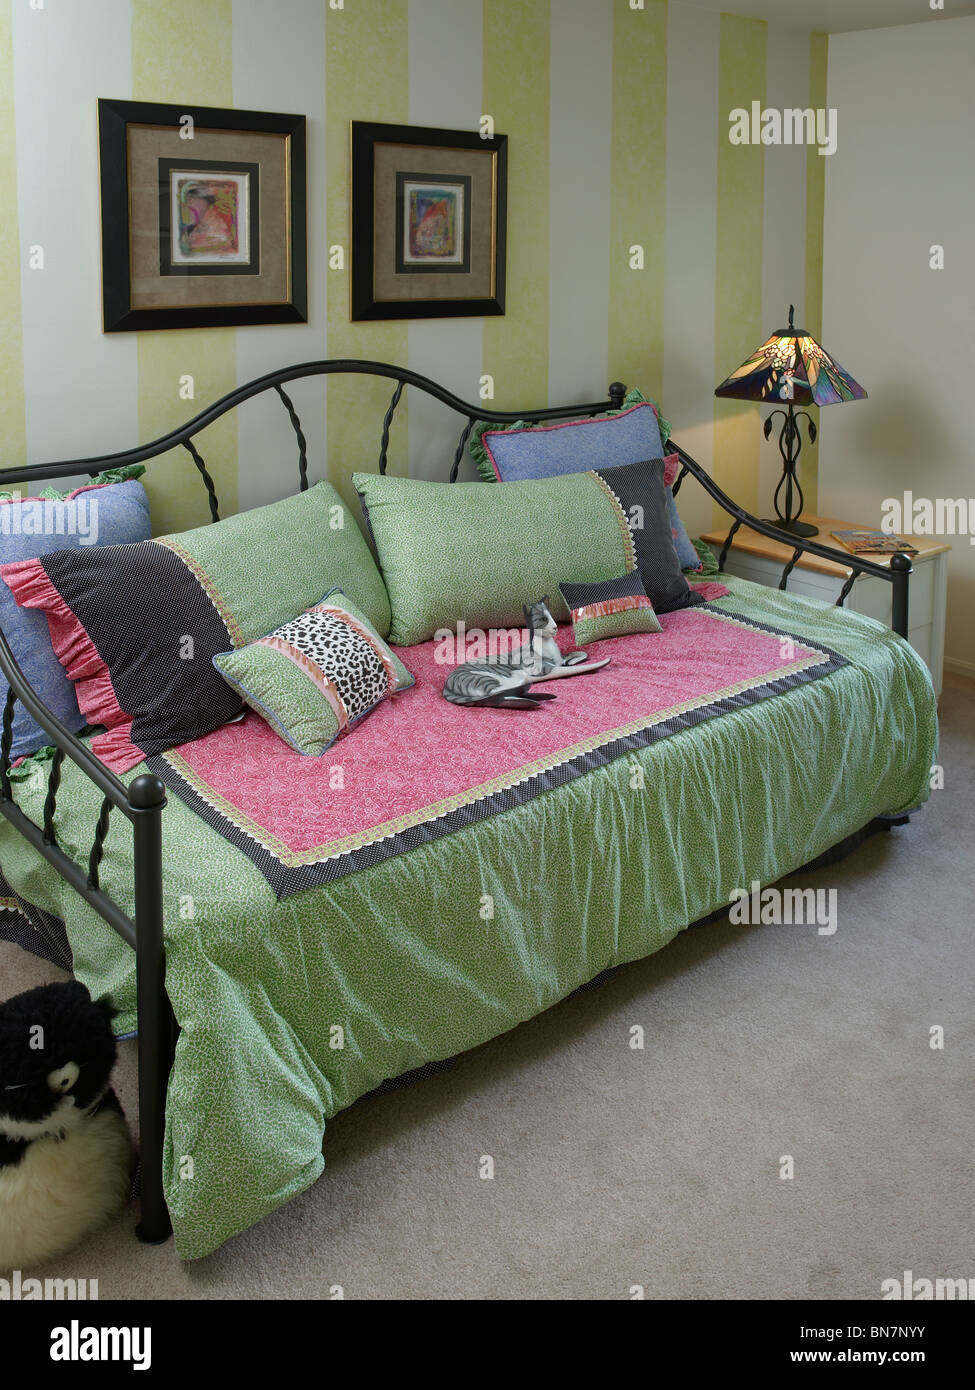 Banquette-lit canapé-lit dans la chambre, New York, USA Banque D'Images